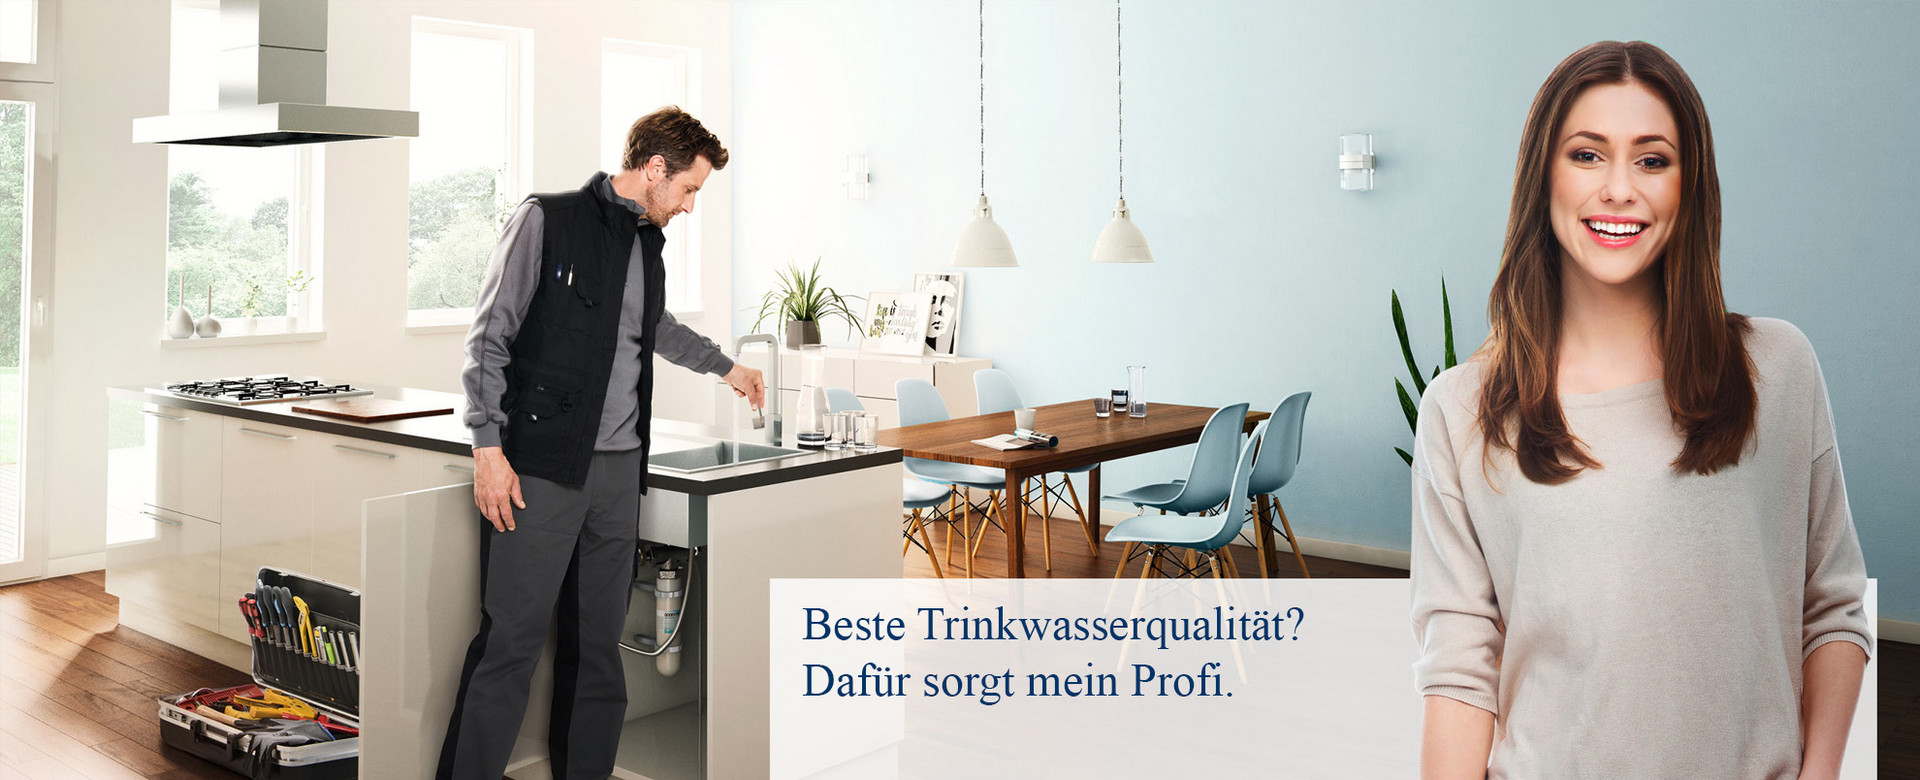 Schacht & Brederlow GmbH